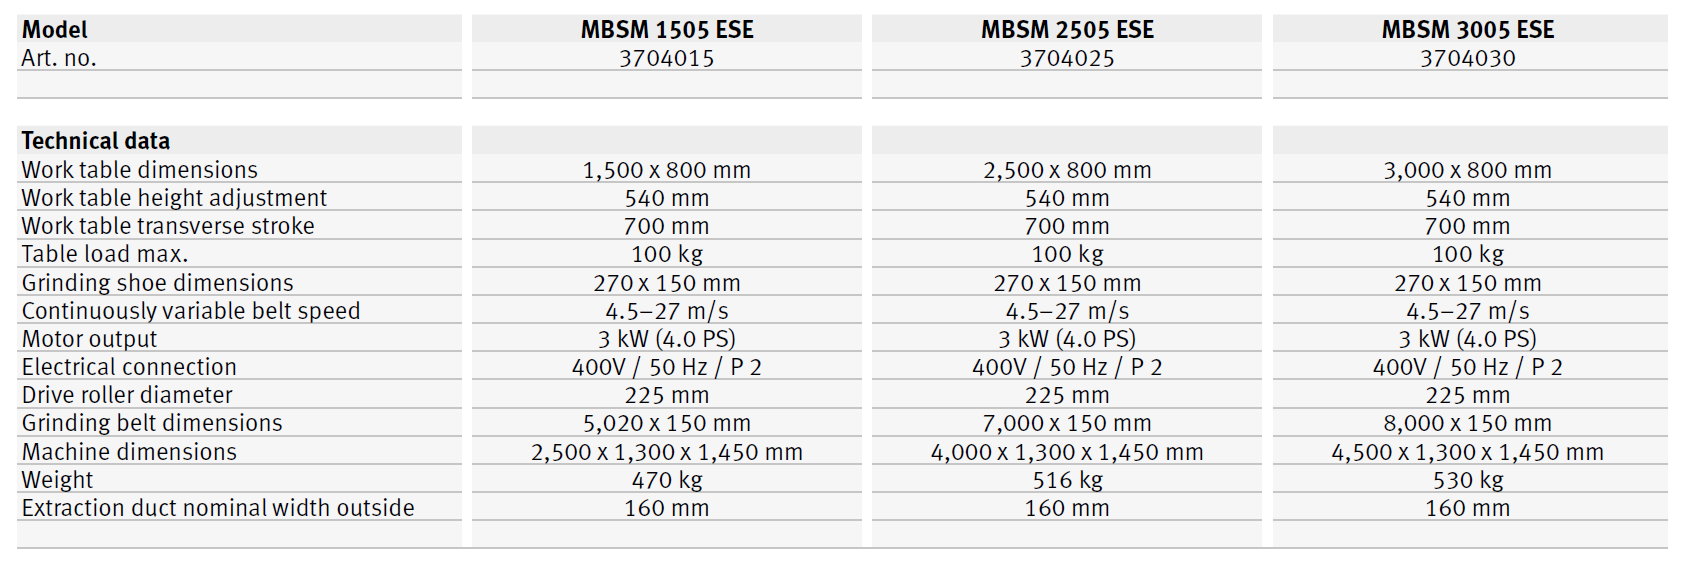 MBSM 1505 ESE / MBSM 2505 ESE / MBSM 3005 ESE